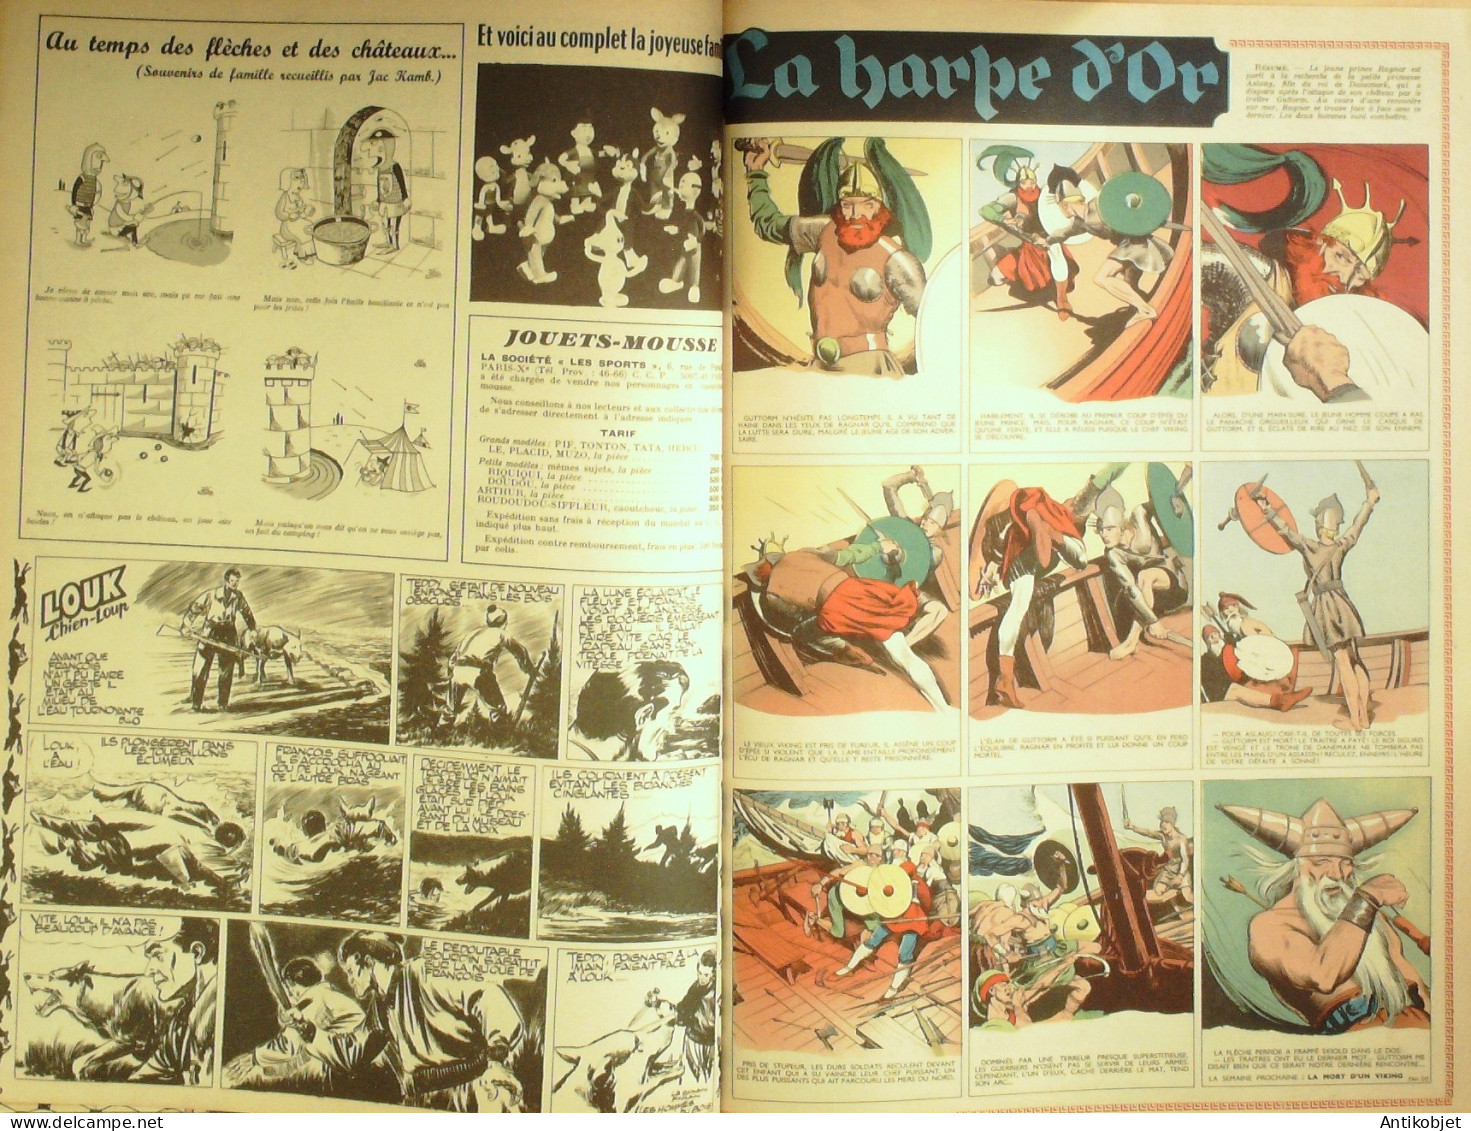 PIF Vaillant 1955 n°540 La pension radicelle Pif le chien la harpe d'or